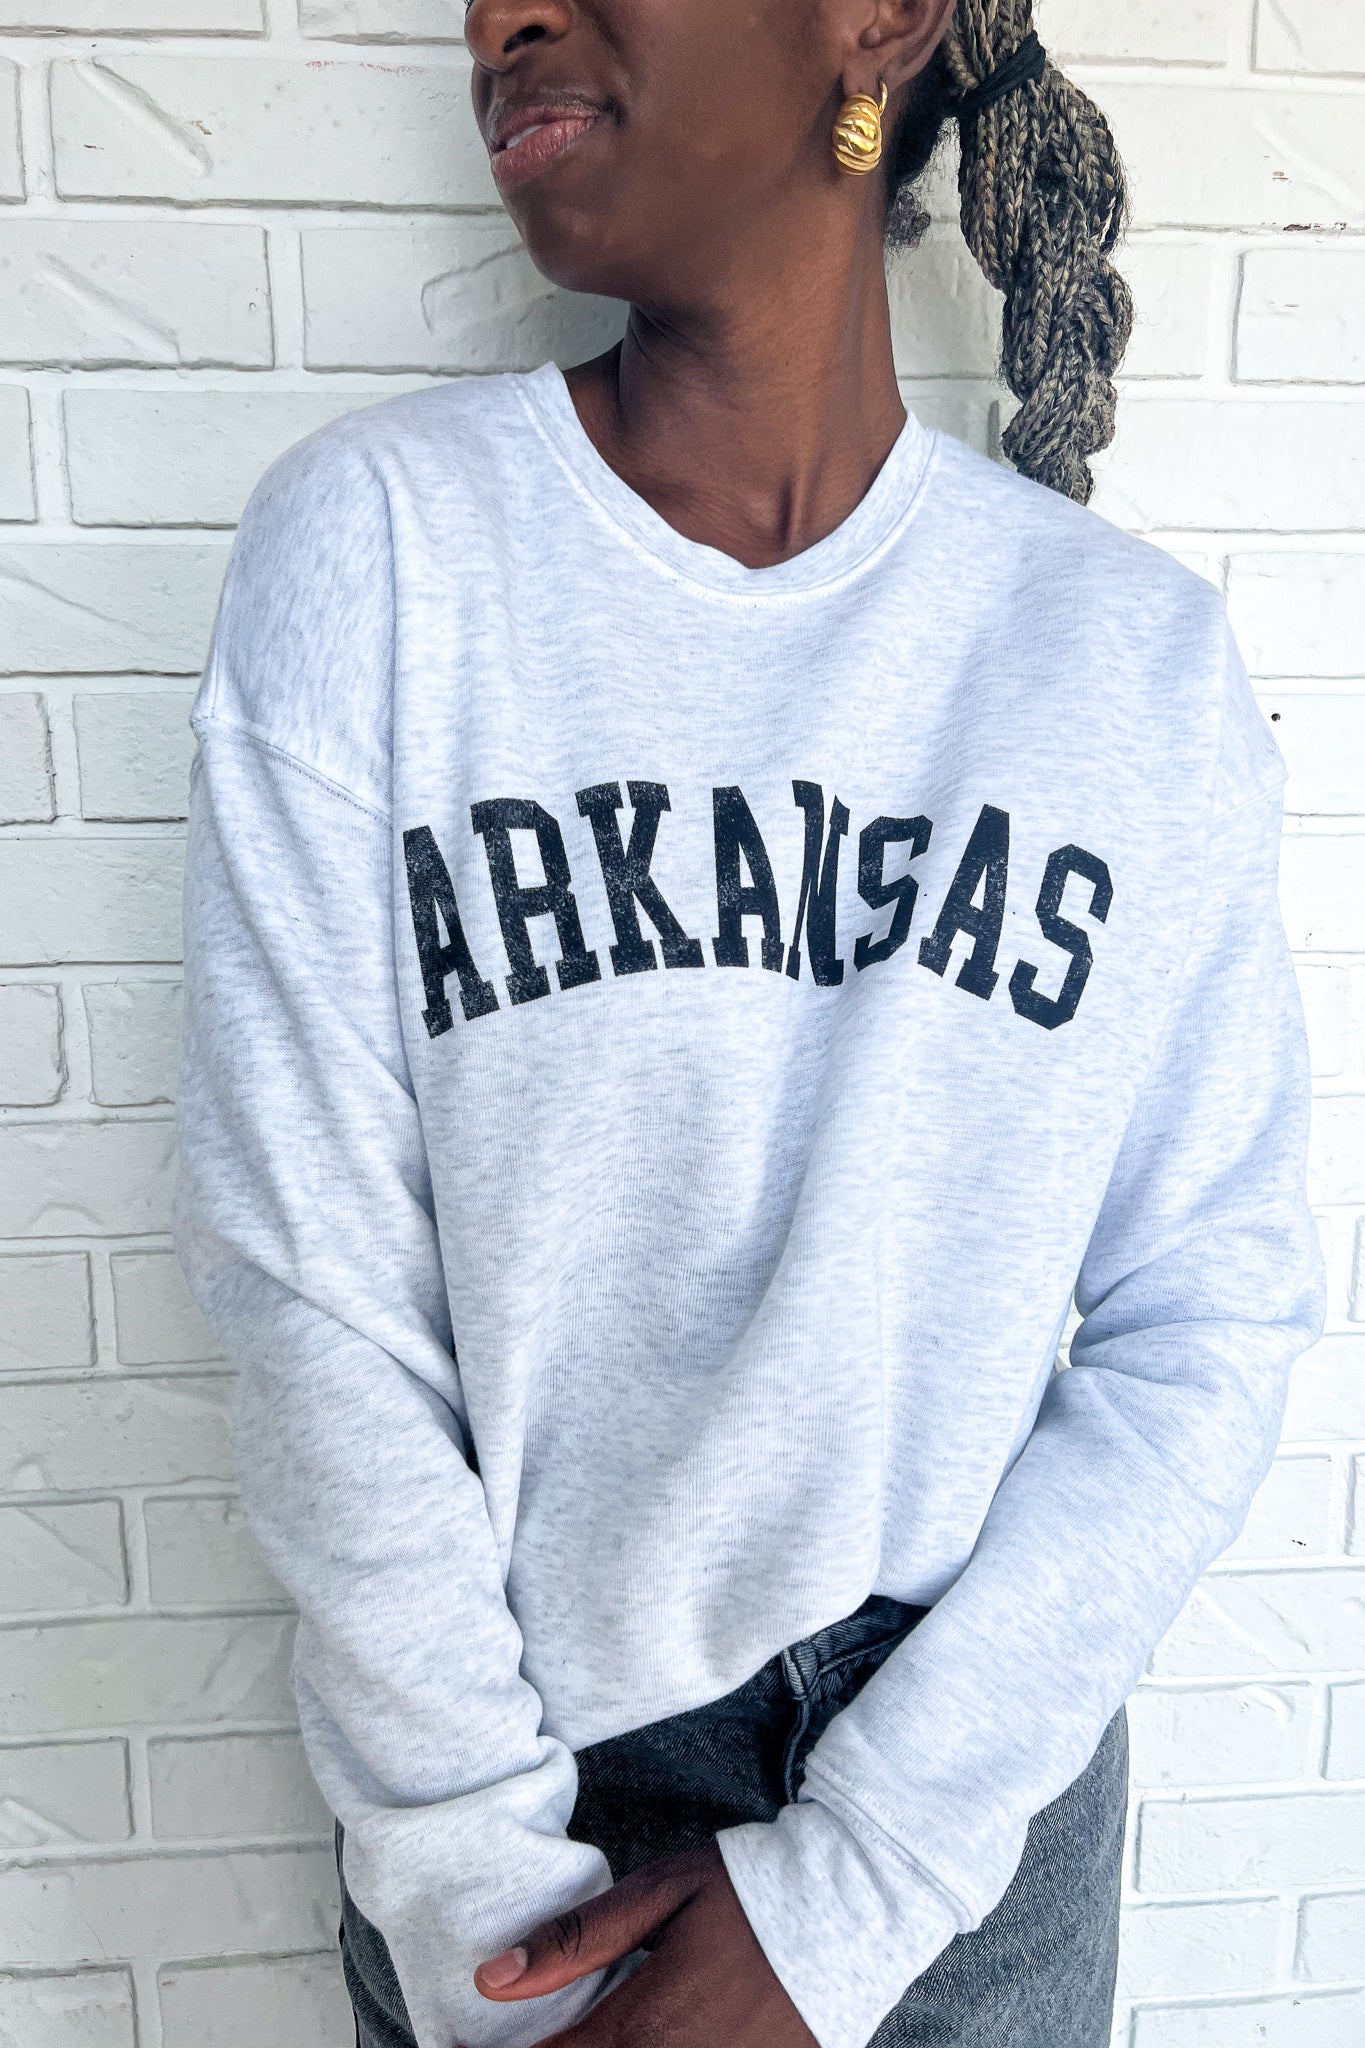 Arkansas Graphic Sweatshirt